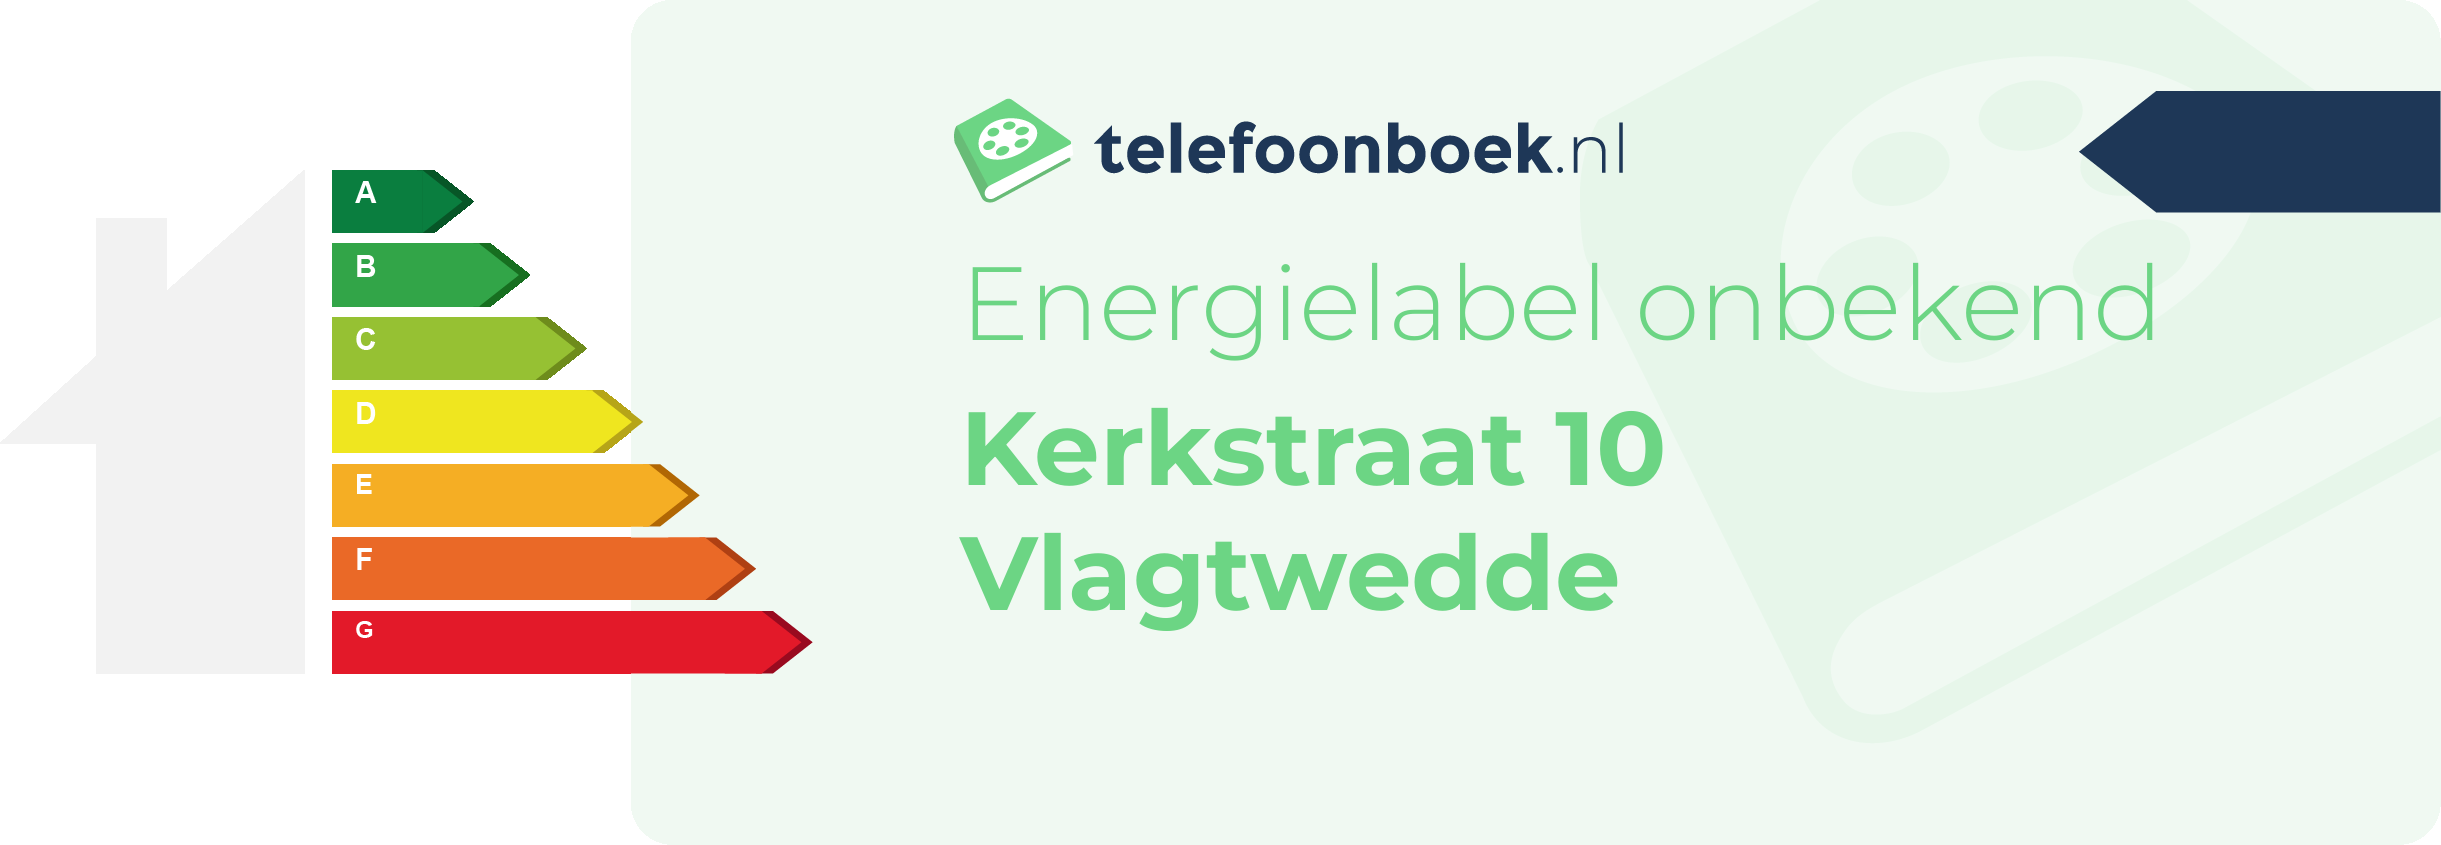 Energielabel Kerkstraat 10 Vlagtwedde